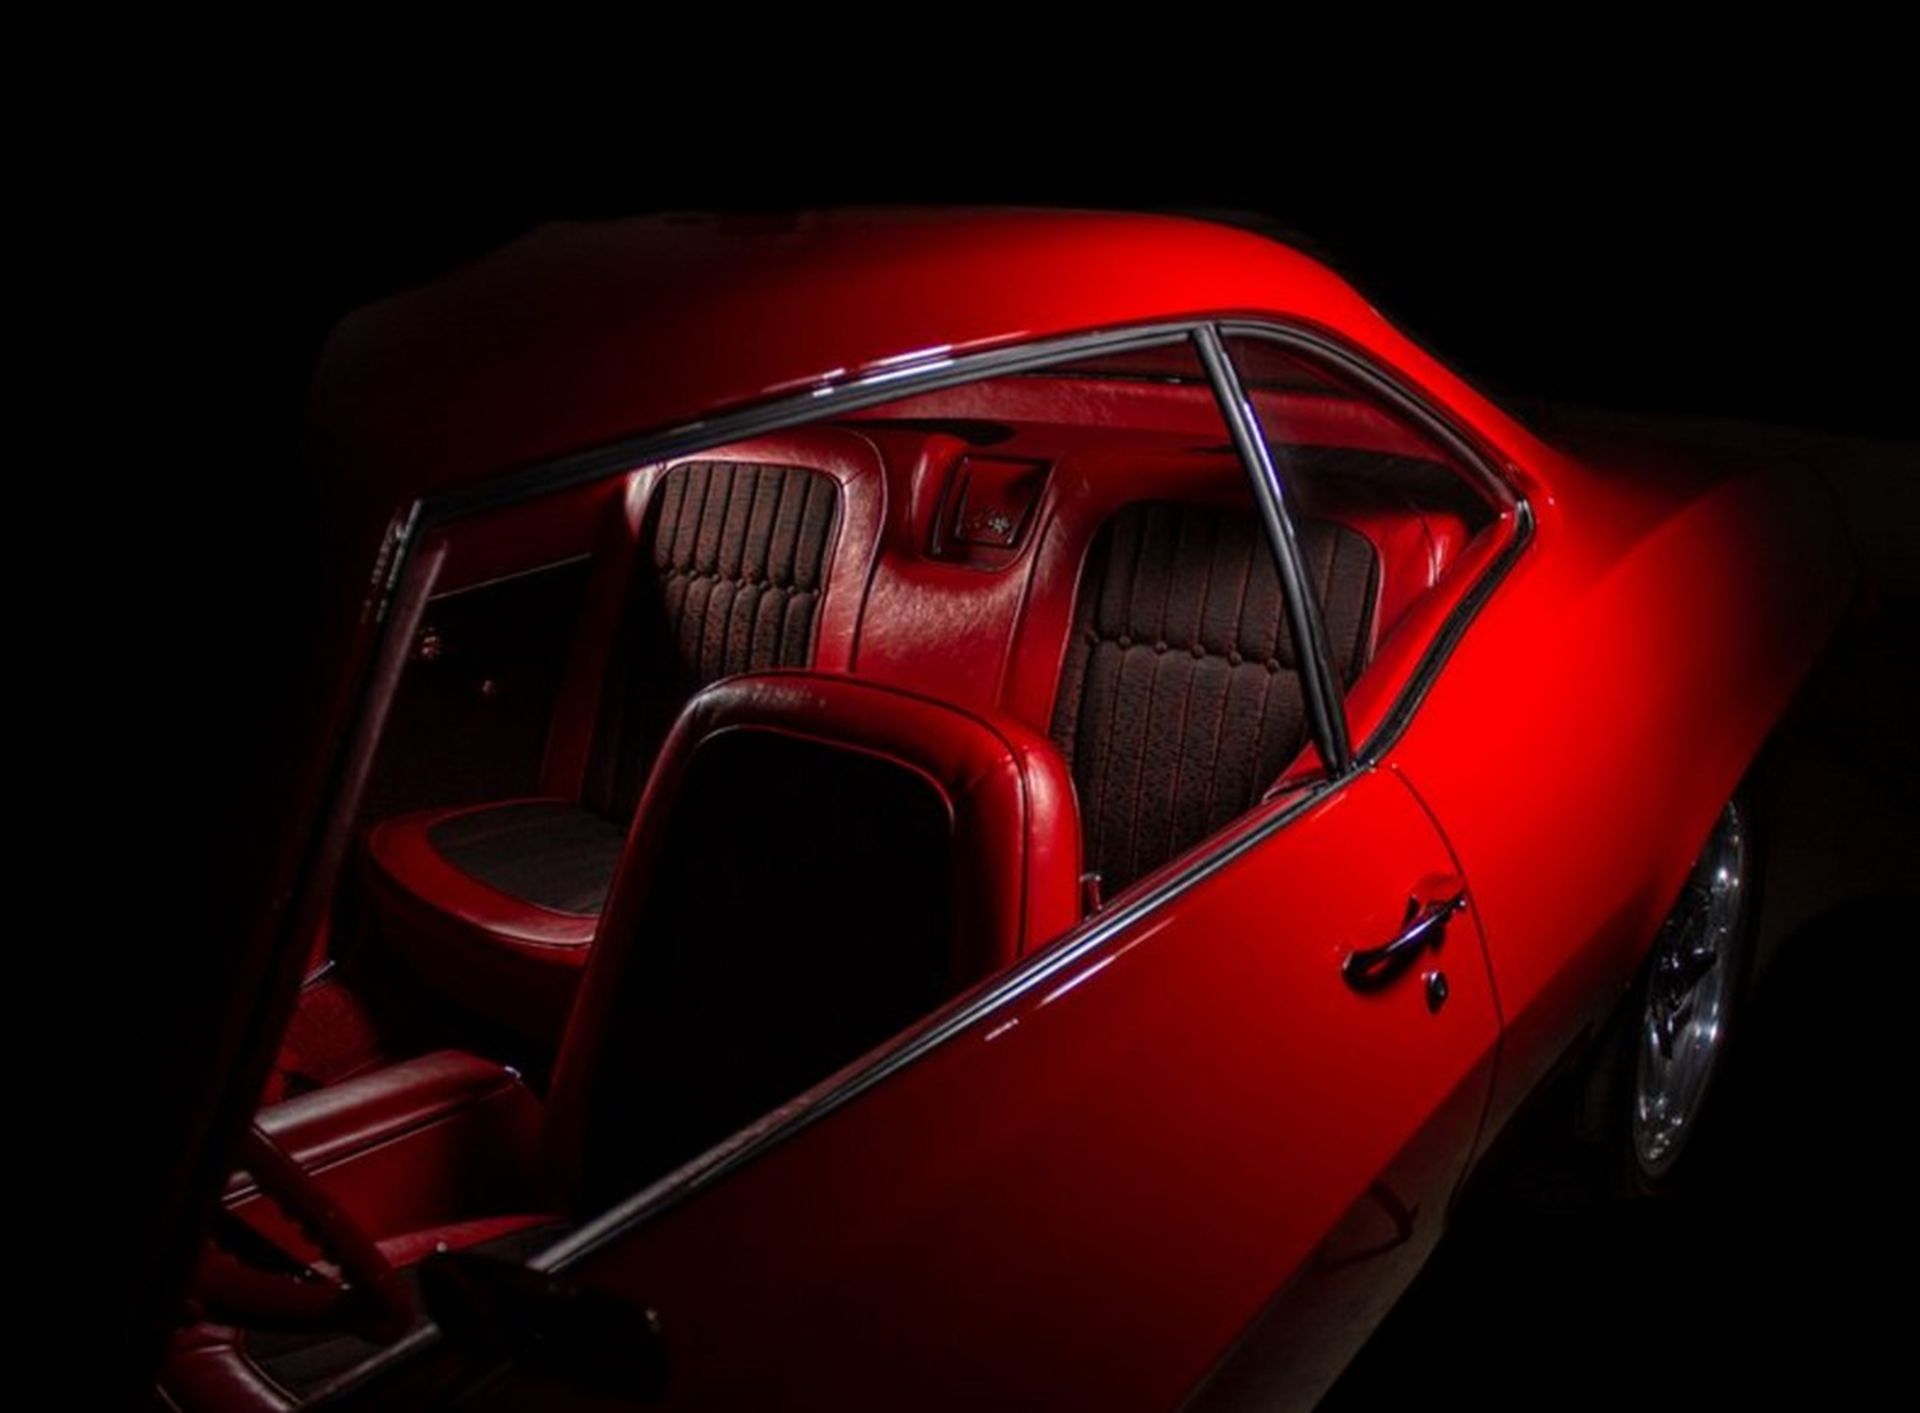 مرجع متخصصين ايران 1969 Chevrolet Camaro Project Cars